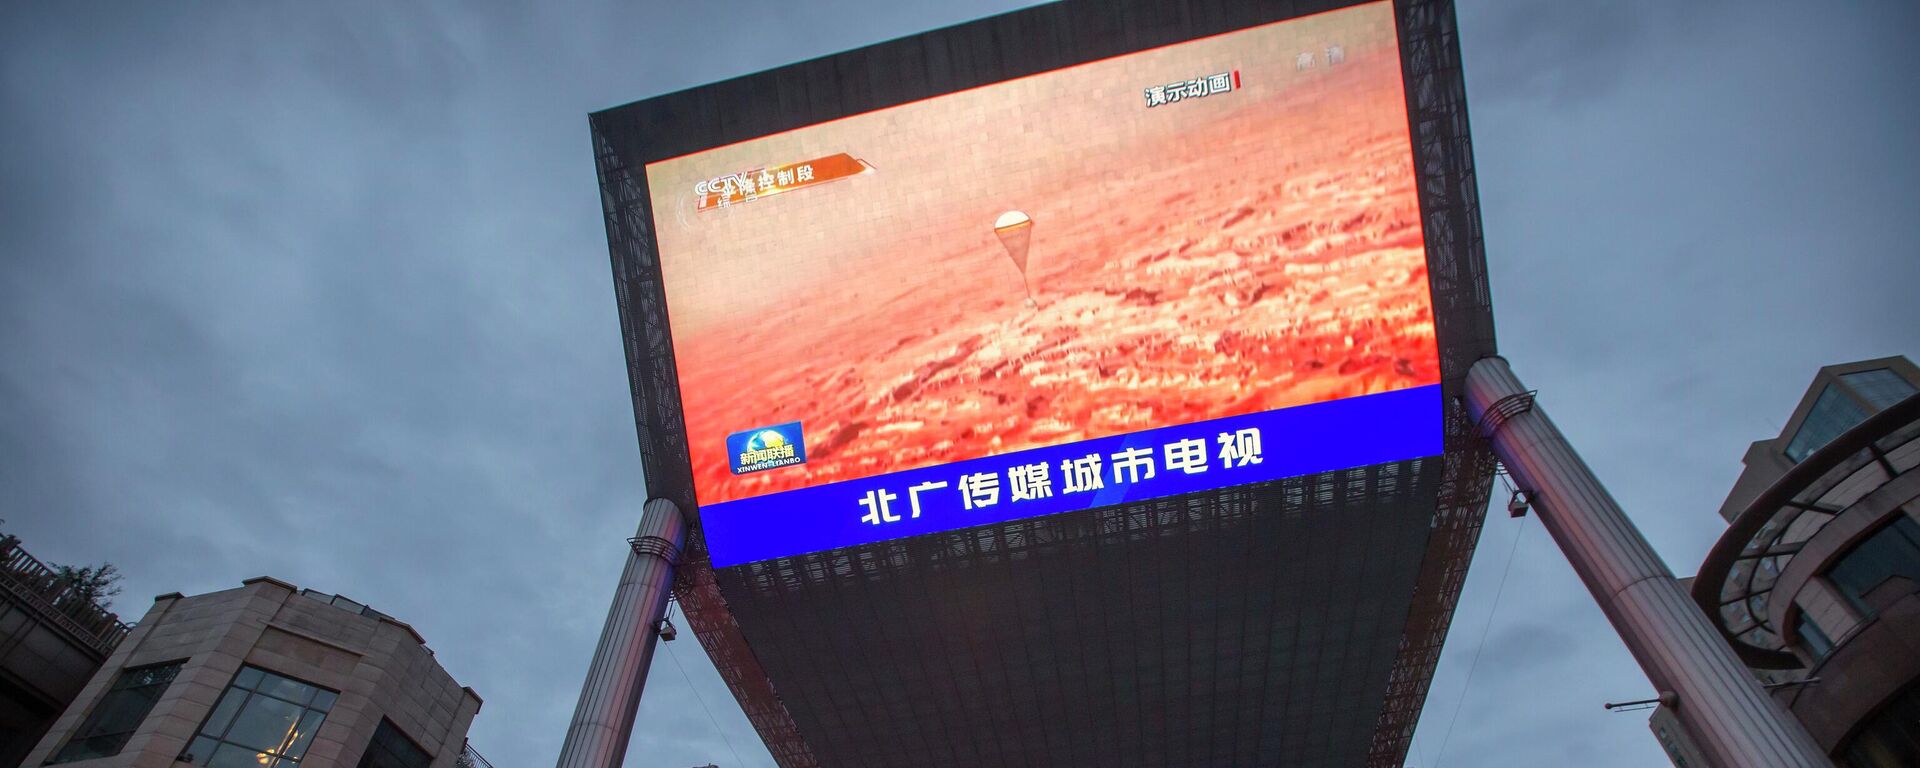 Bideo-bim koji prikazuje izveštaj o uspešnom sletanju kineske sonde na Mars - Sputnik Srbija, 1920, 07.11.2022